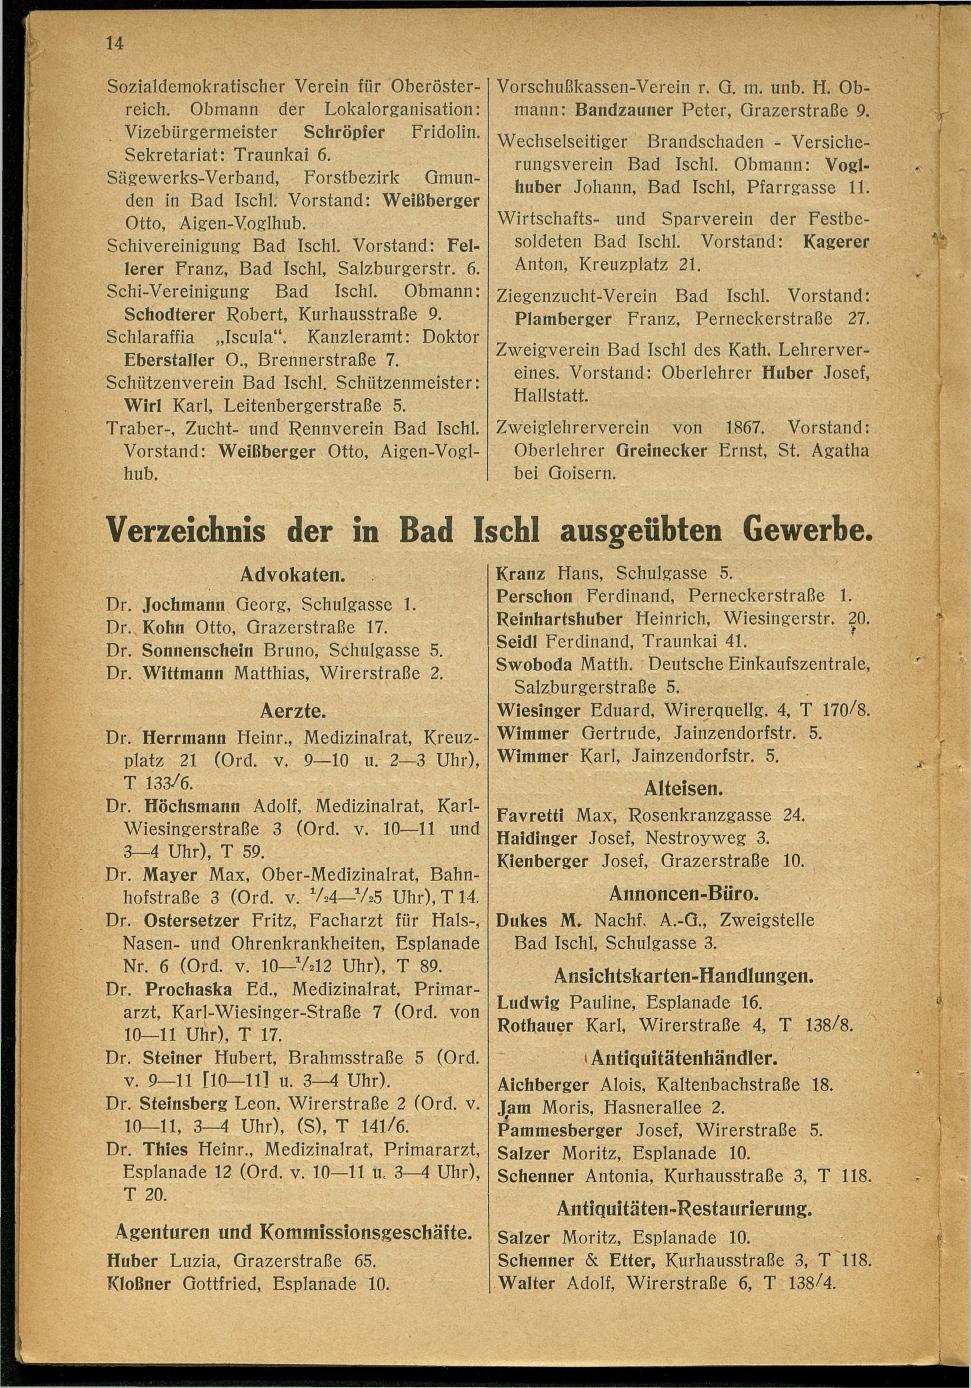 Handels- und Gewerbe-Adressbuch nebst Häuser-Verzeichnis der Kurortsgemeinde Bad Ischl 1925 - Seite 18